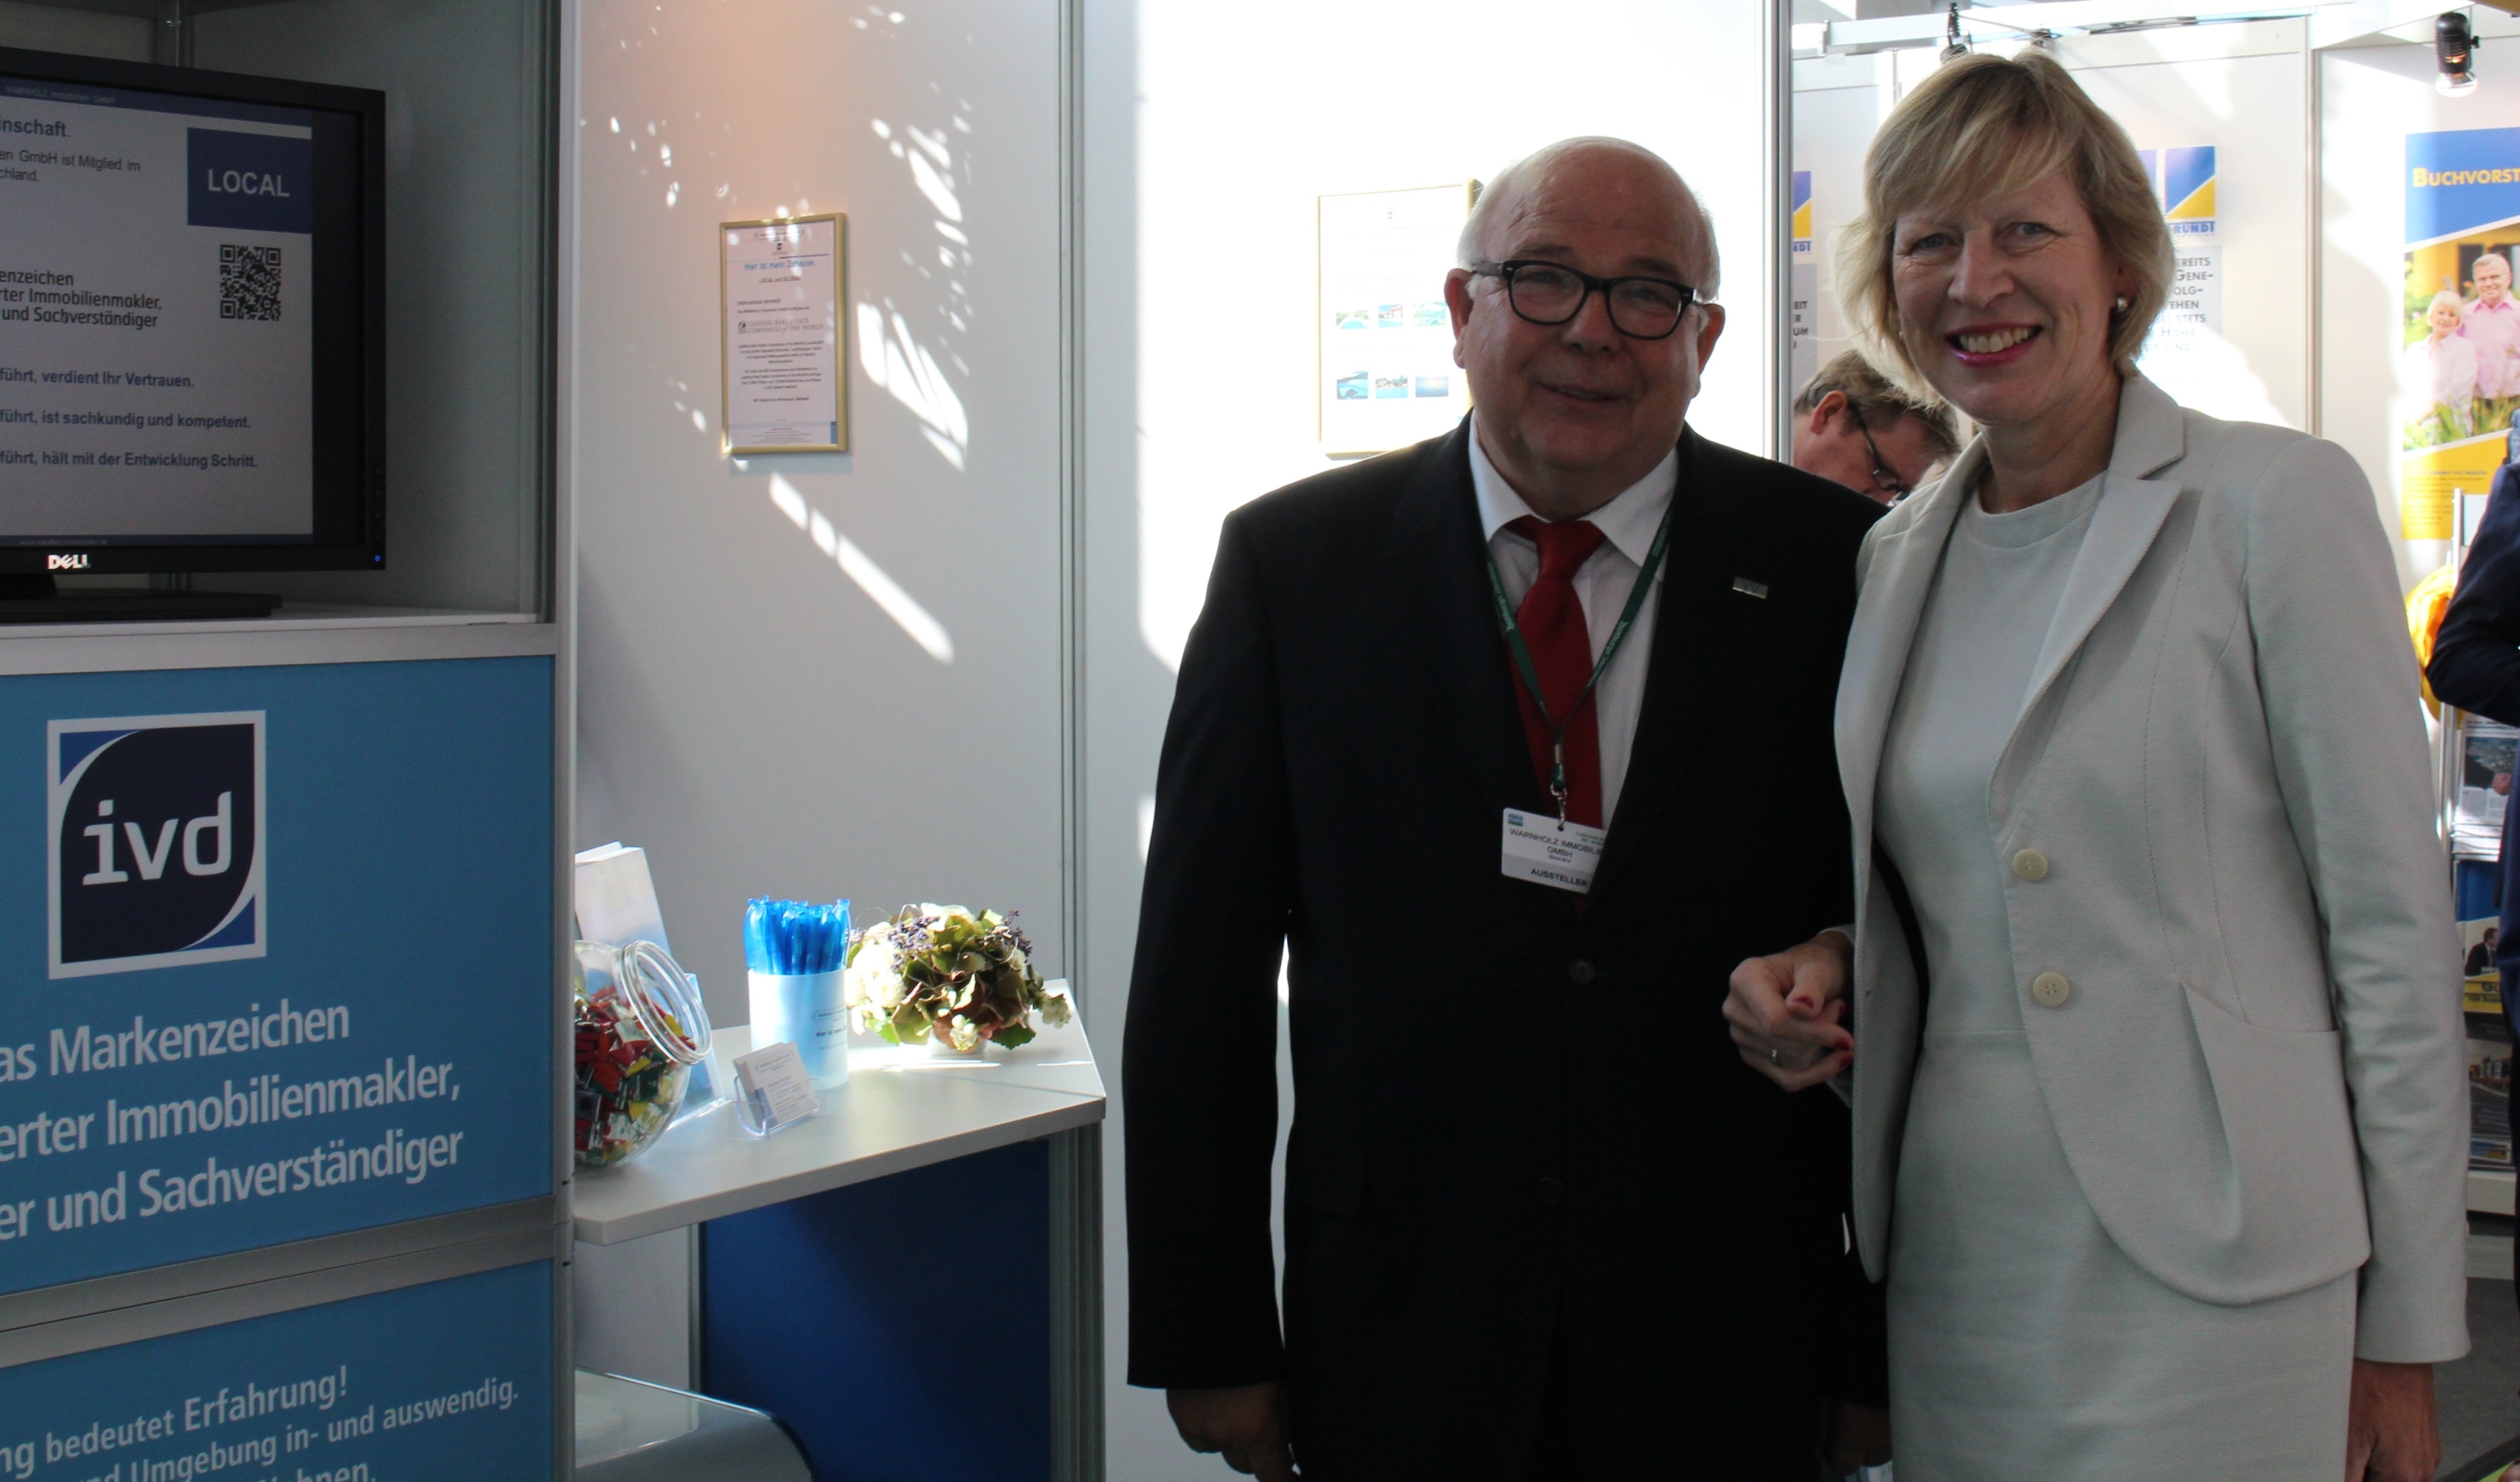 Karl-Heinz Warnholz begrüßt die Senatorin am Stand der WARNHOLZ Immobilien GmbH auf der Hamburger Immobilienmesse